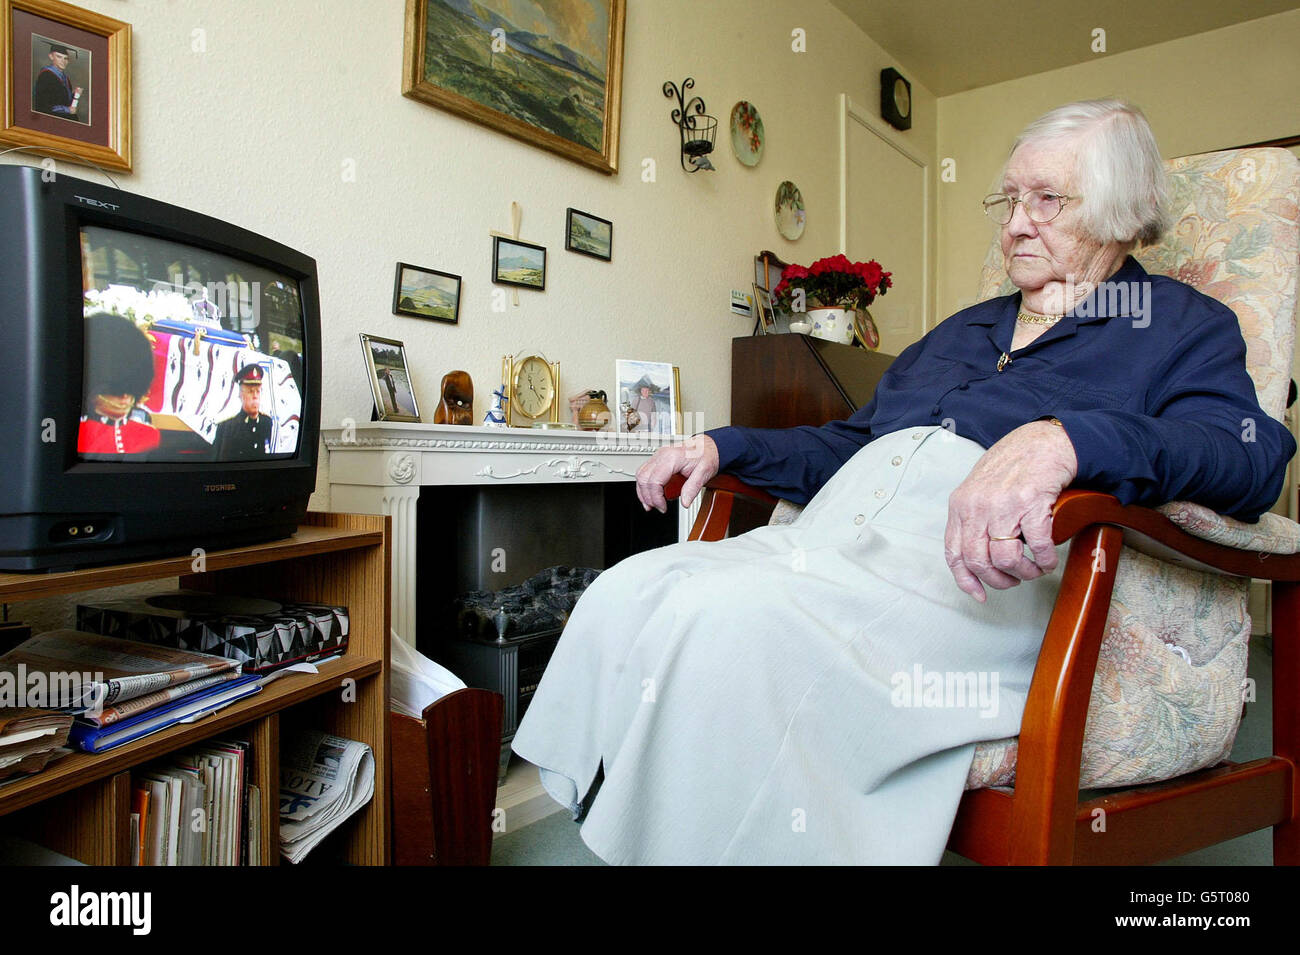 May Baxter, de 90 años, observa el funeral de la Reina Isabel, la Reina Madre, en su casa de Sale, Manchester. Mayo se sentó en el centro comercial de Londres durante la noche con su madre para ver la Coronación de la Reina Isabel y el Rey Jorge VI el 6 de 1937. Foto de stock